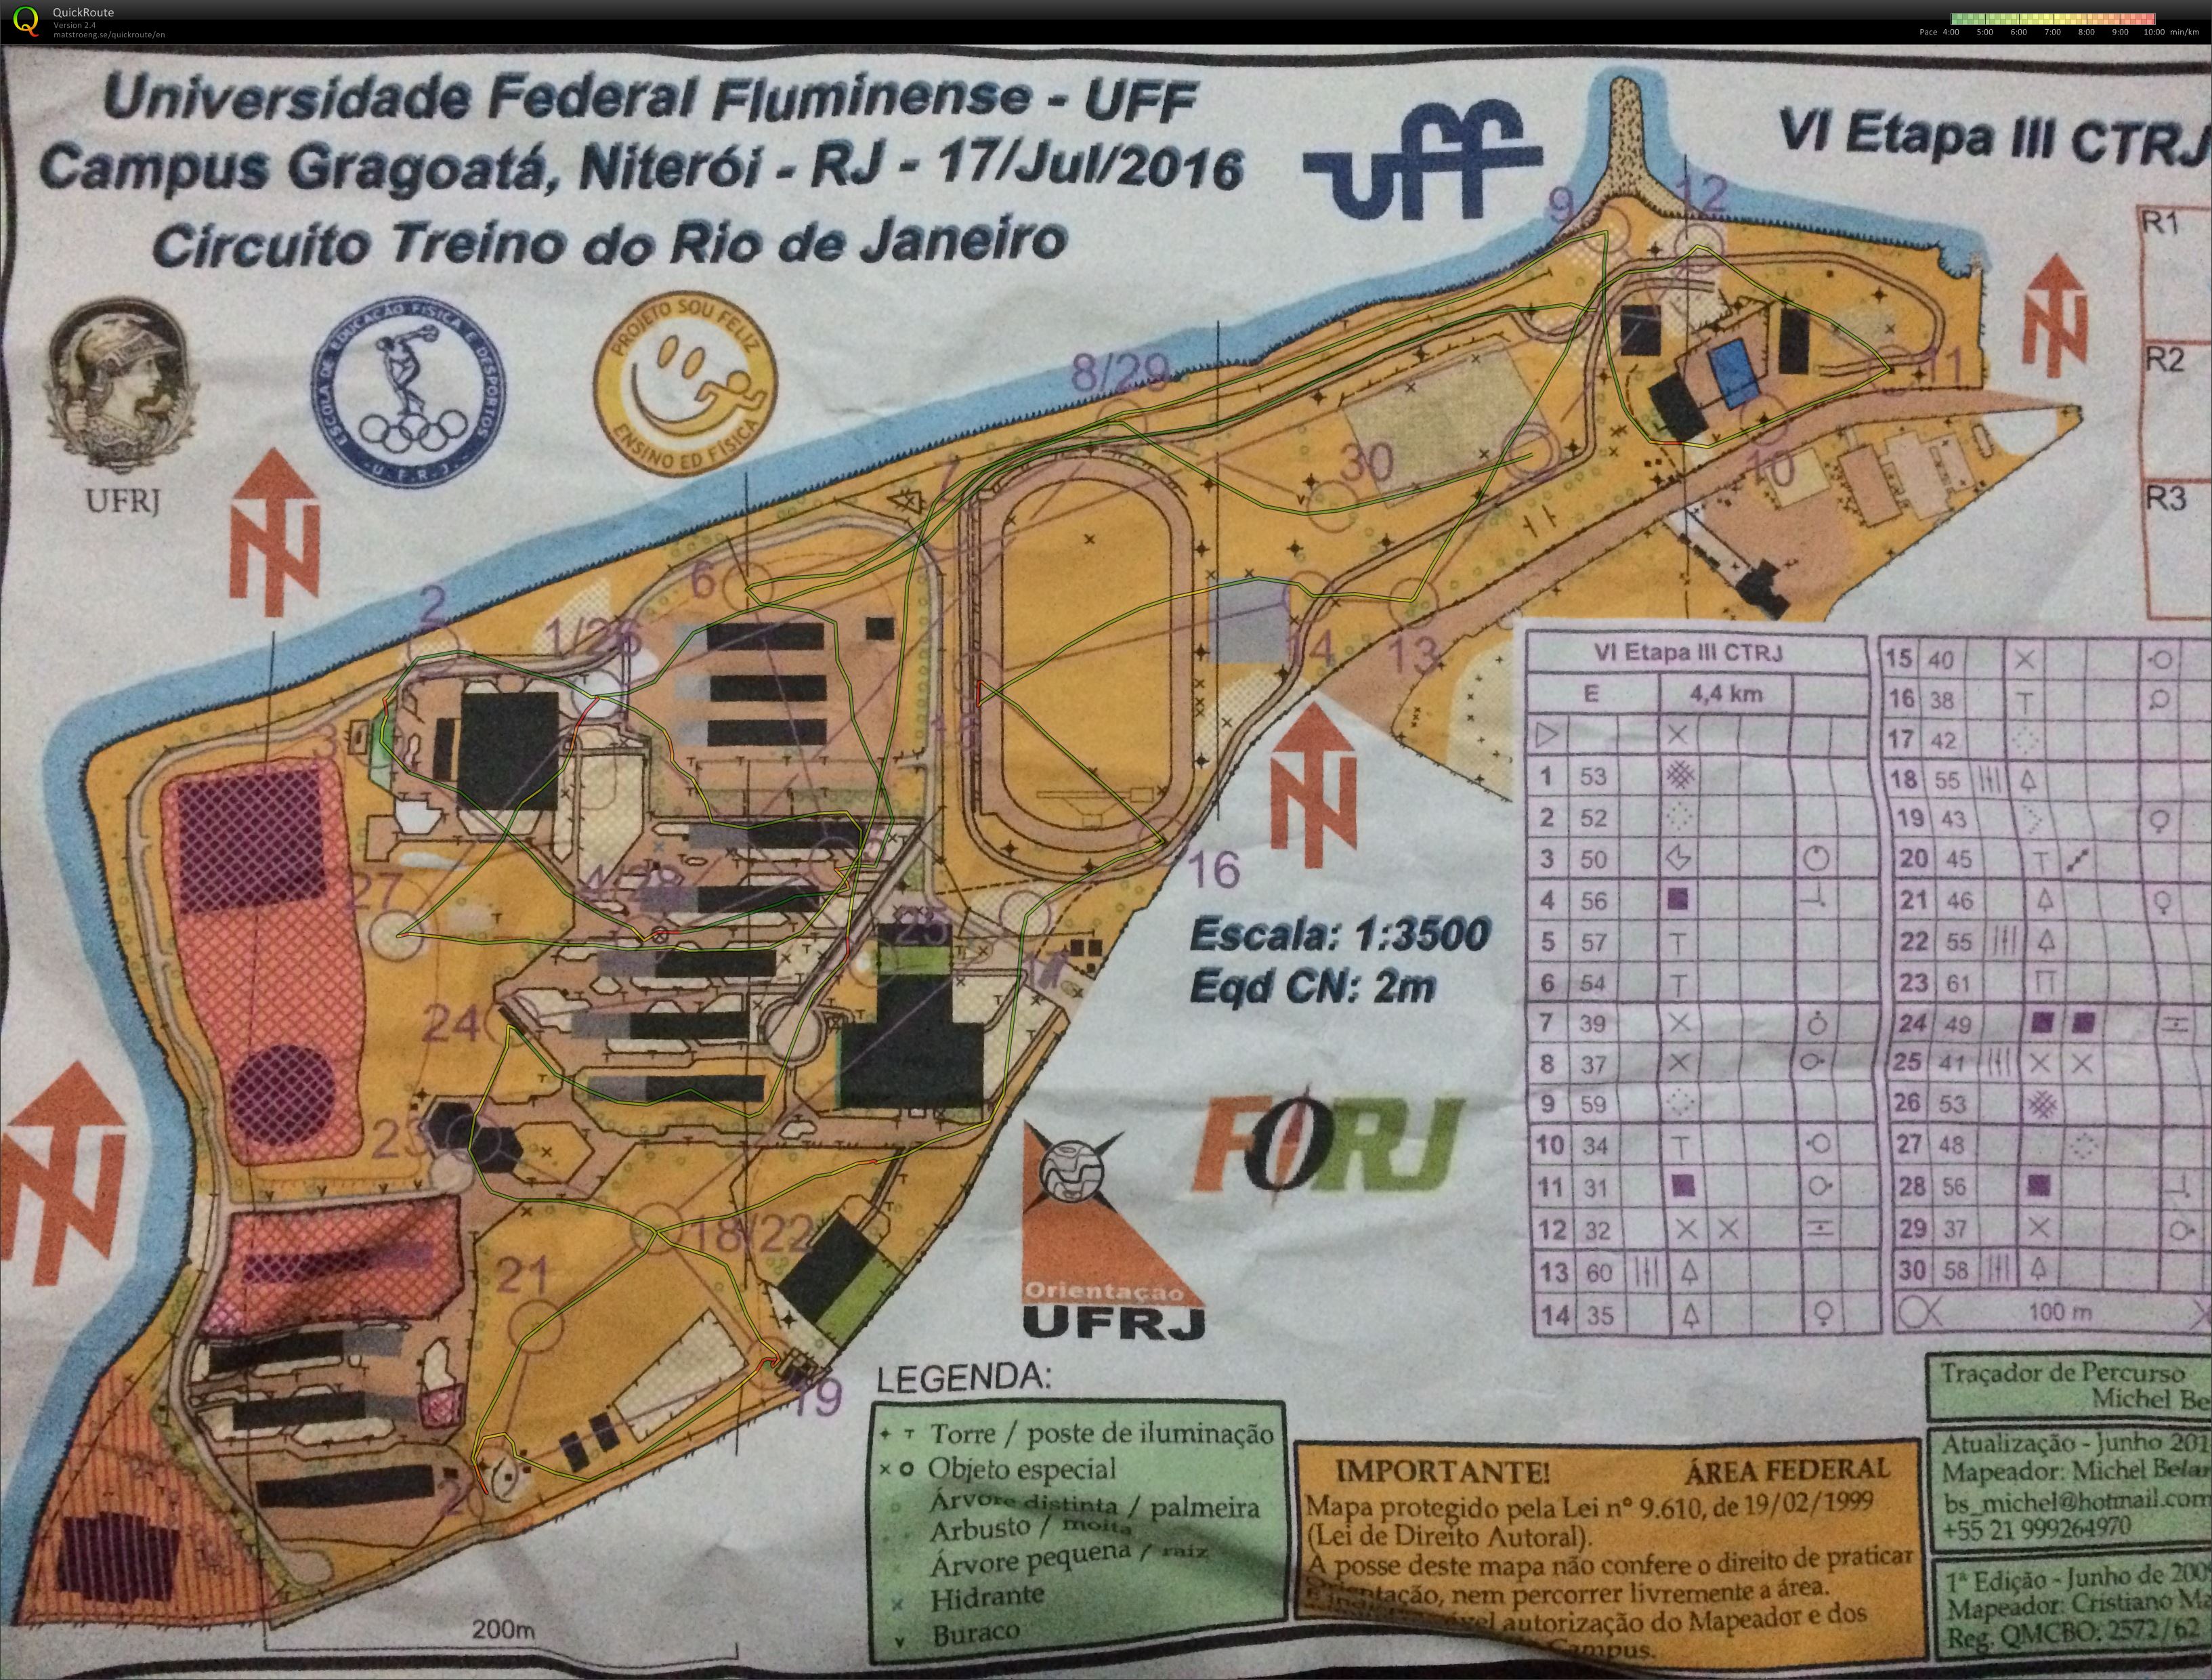 VI Etapa III, Circuito Treino do Rio de Janeiro (17-07-2016)